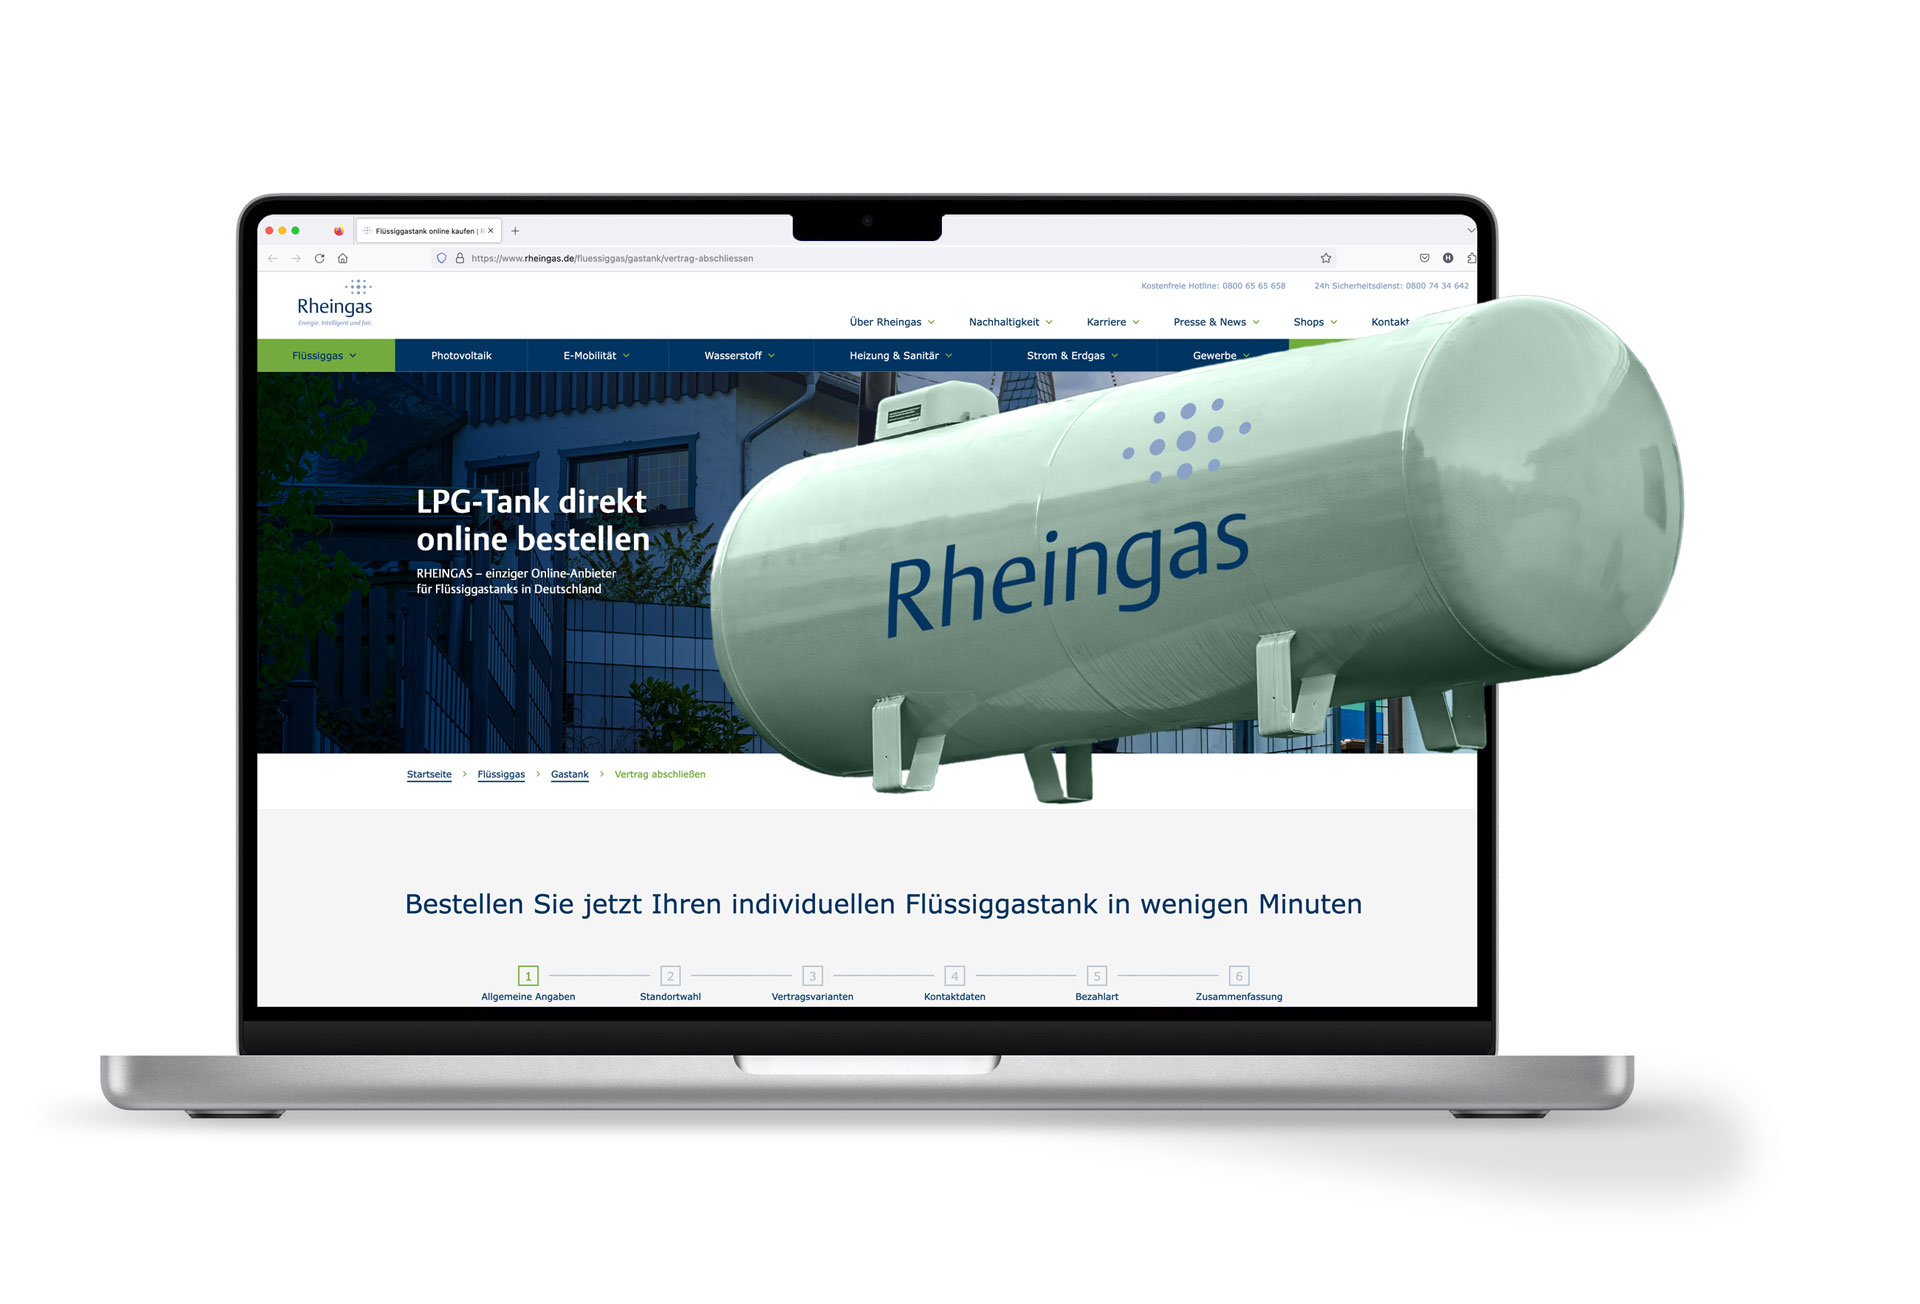 Abbildung eines Laptops, der die online Bestellung eines LPG-Tanks bei Rheingas zeigt.